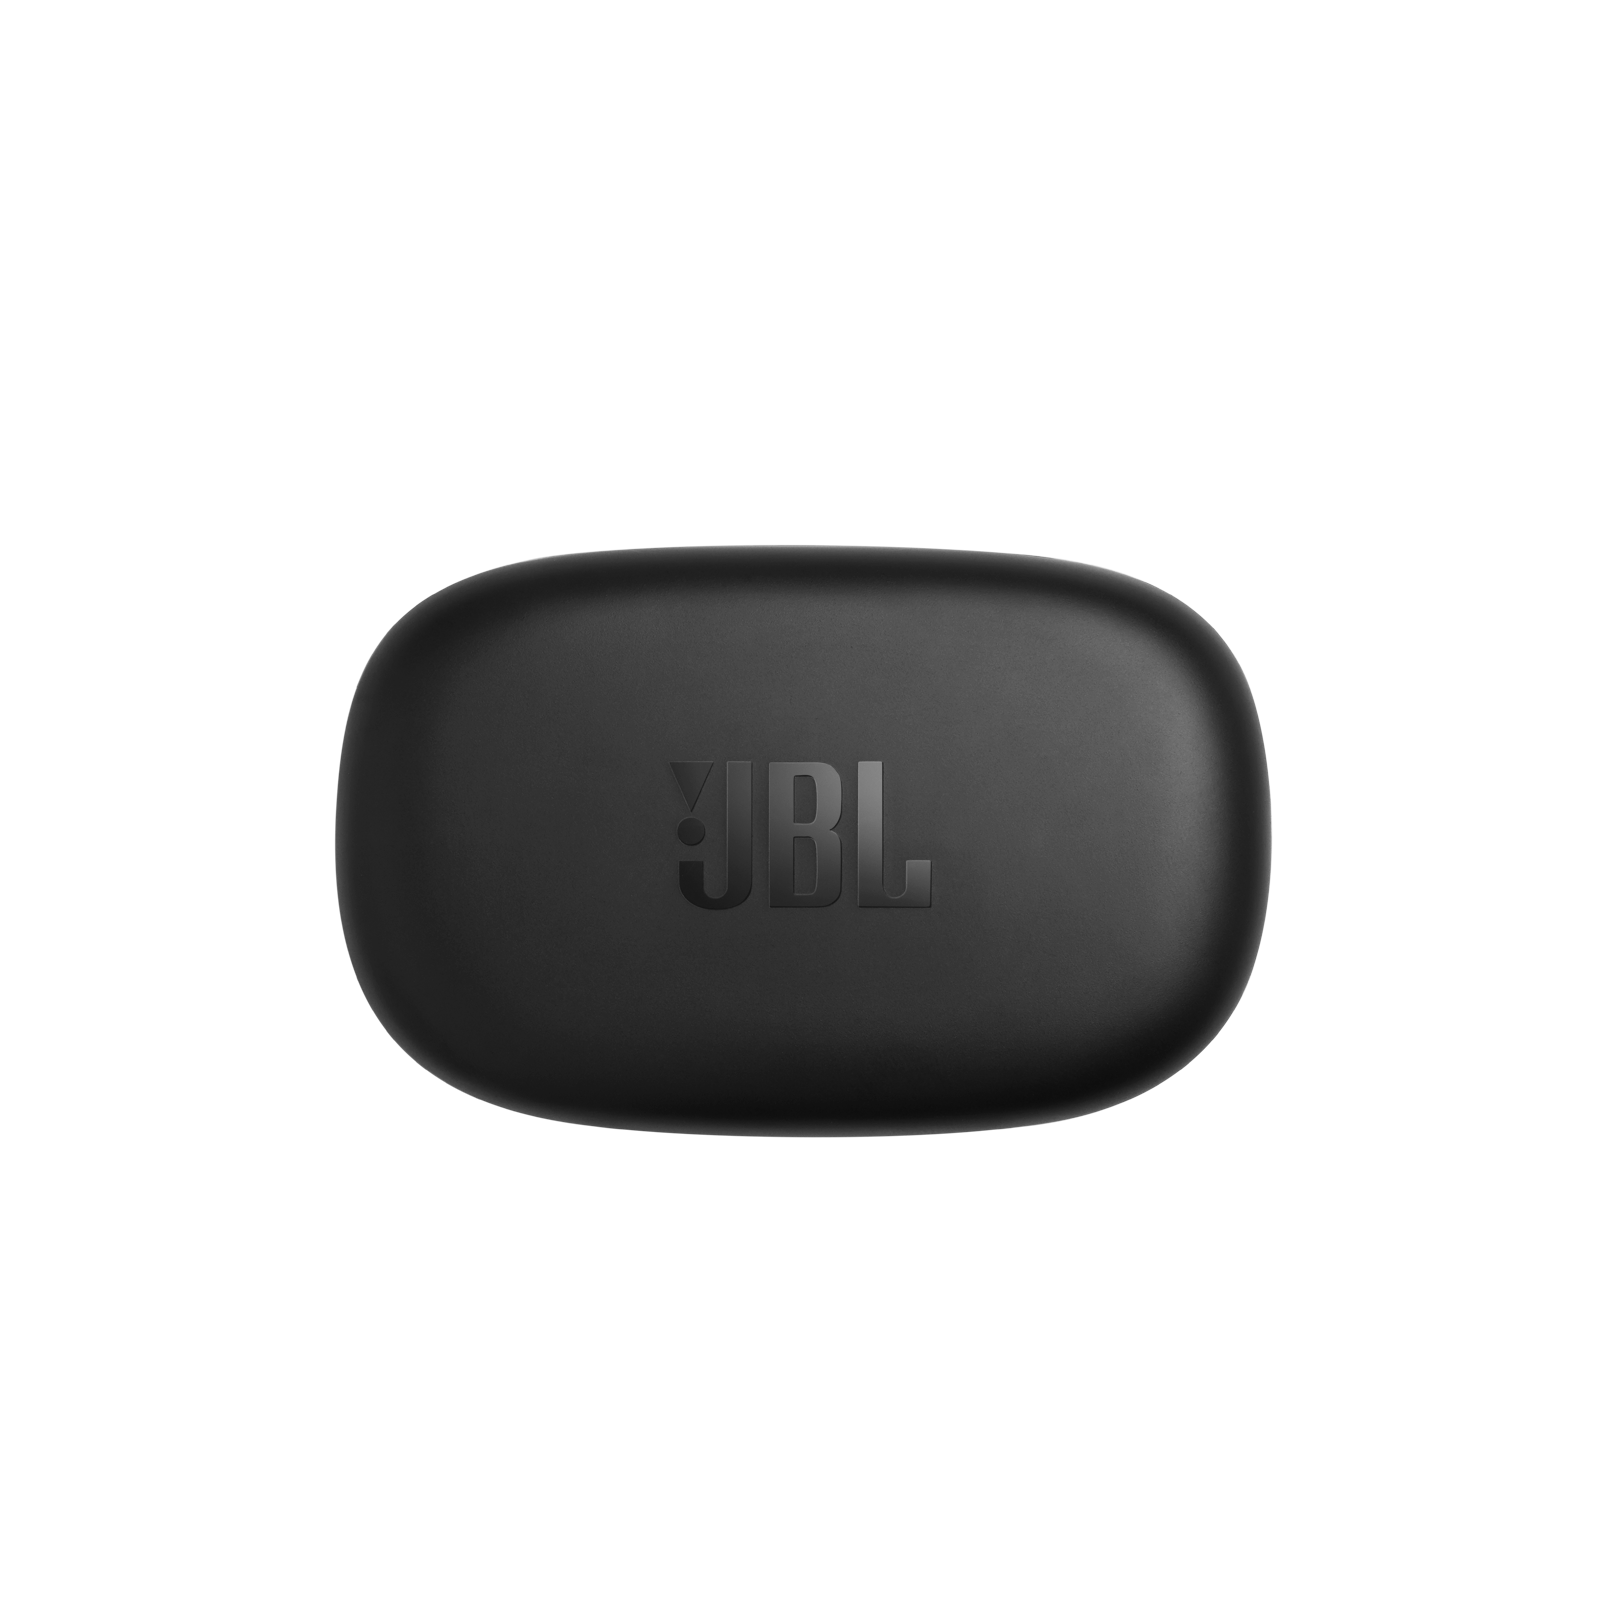 JBL Endurance Peak II - Black - Waterproof true wireless sport earbuds - Detailshot 4